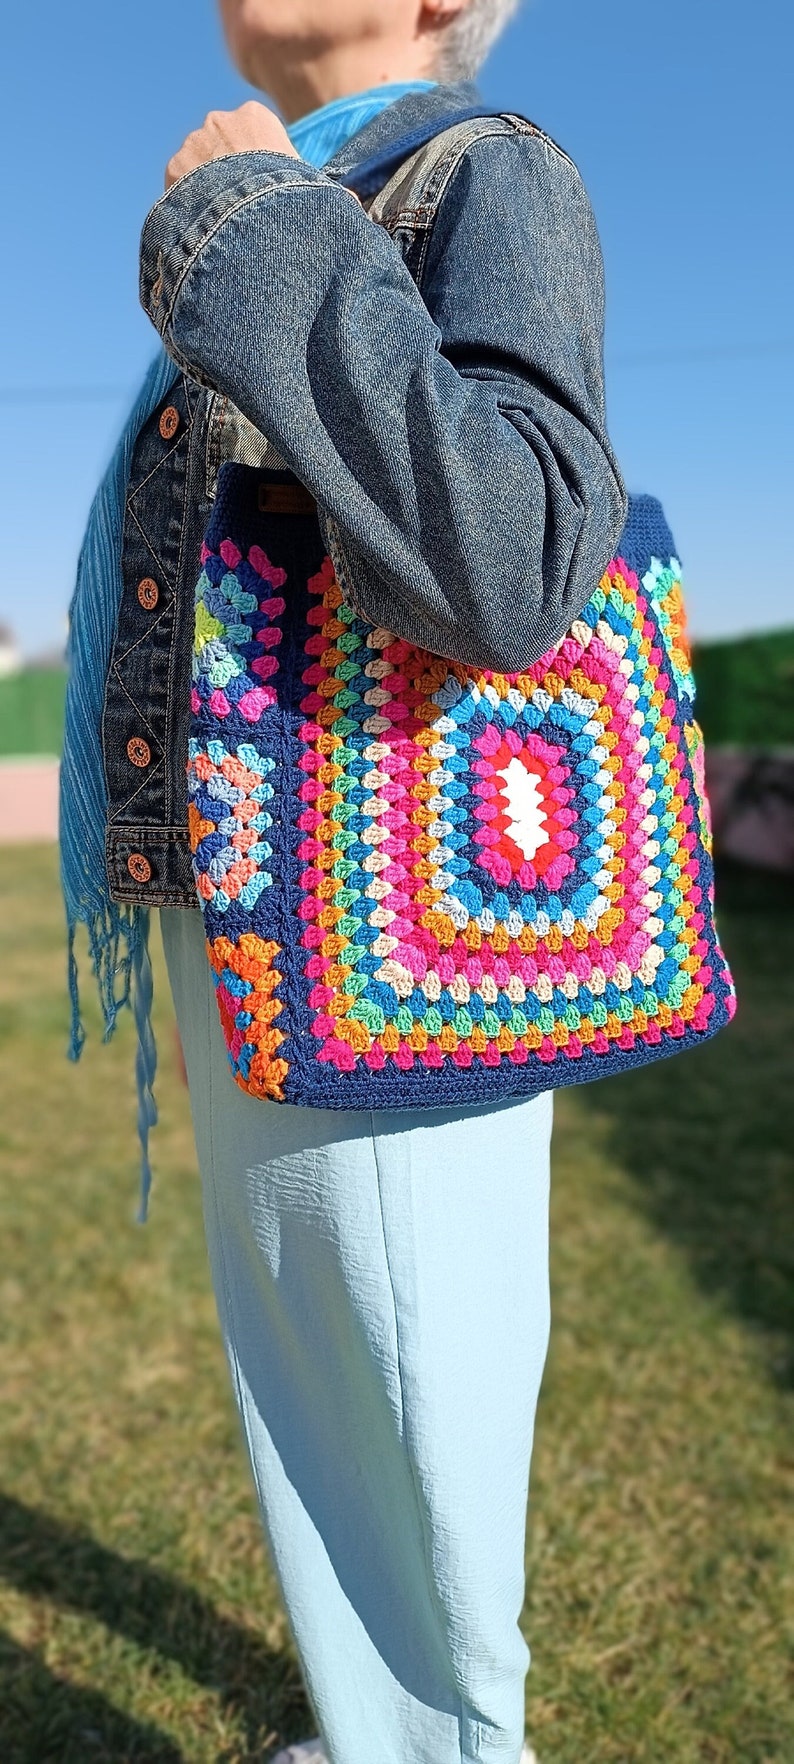 Navy Blue Handmade Crochet Bag,Boho Bag,Shoulder Bag, Granny Square Bag,Gift For Her,Crochet Knitting Bag,Knit Tote Bag zdjęcie 3